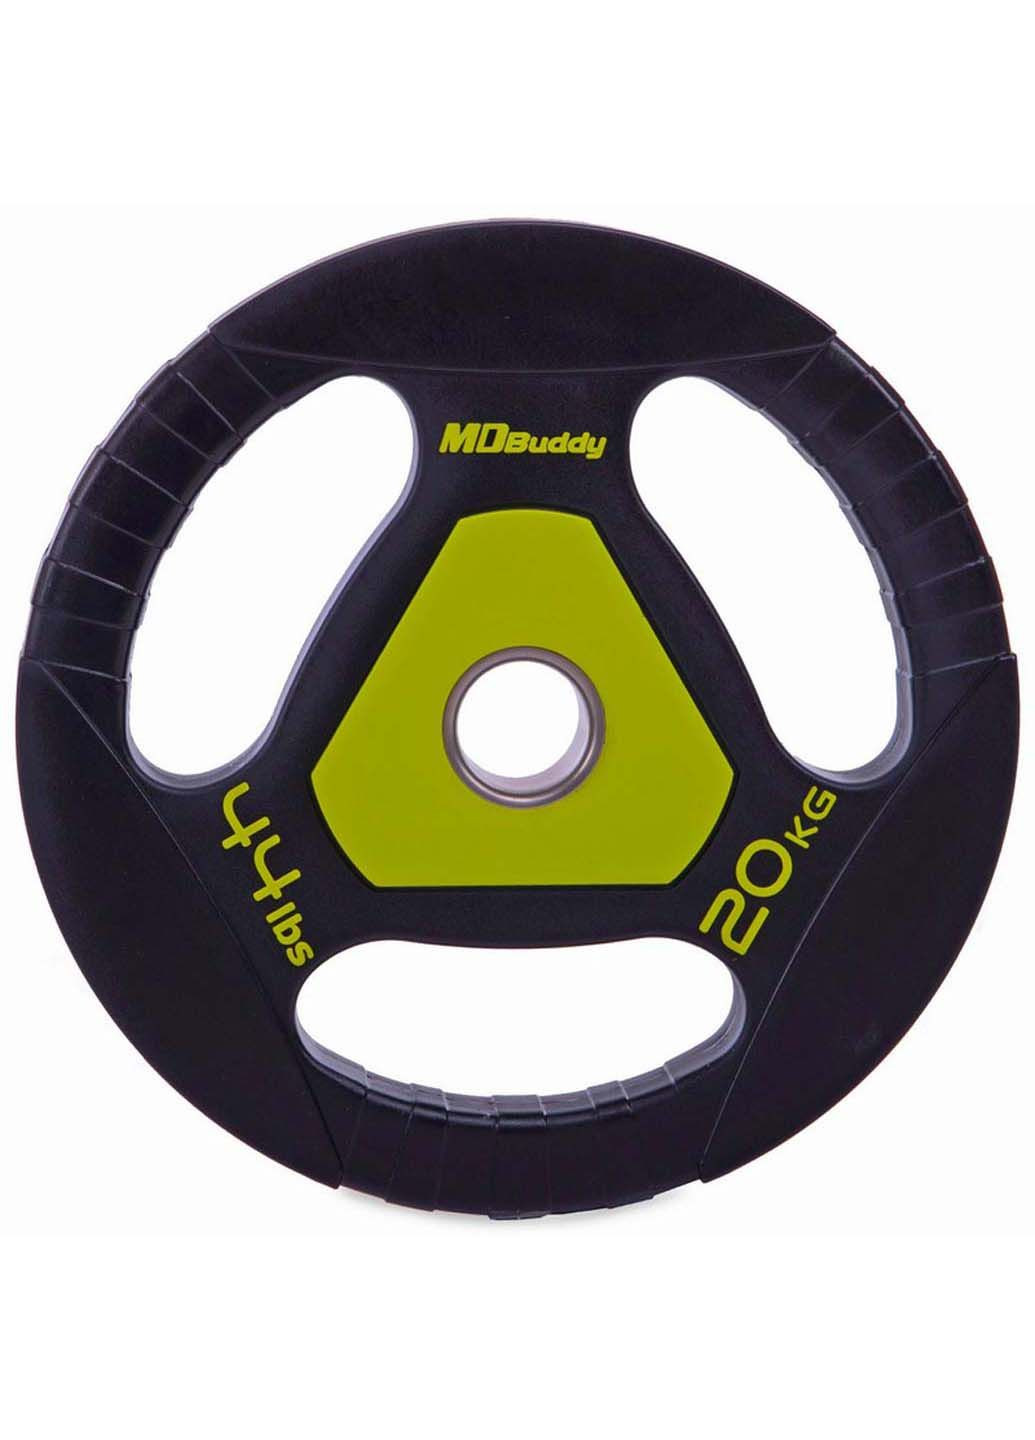 Блины диски полиуретановые TA-2677 20 кг MDbuddy (286043852)